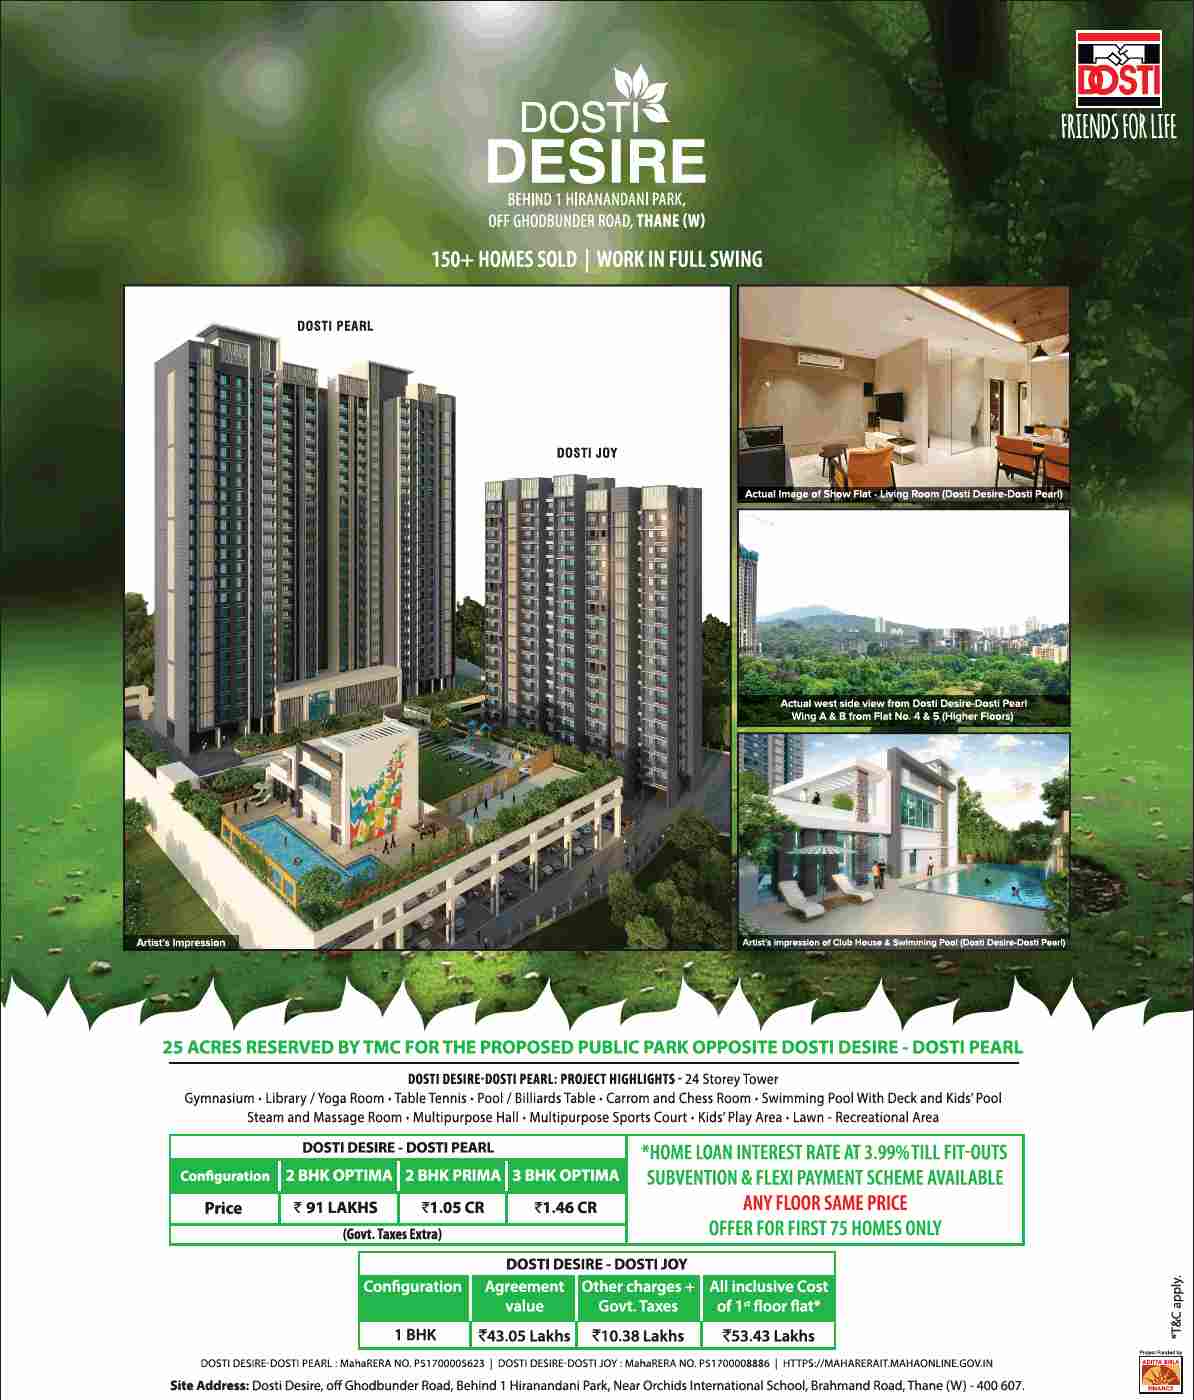 Experience world class amenities at Dosti Desire in Mumbai Update